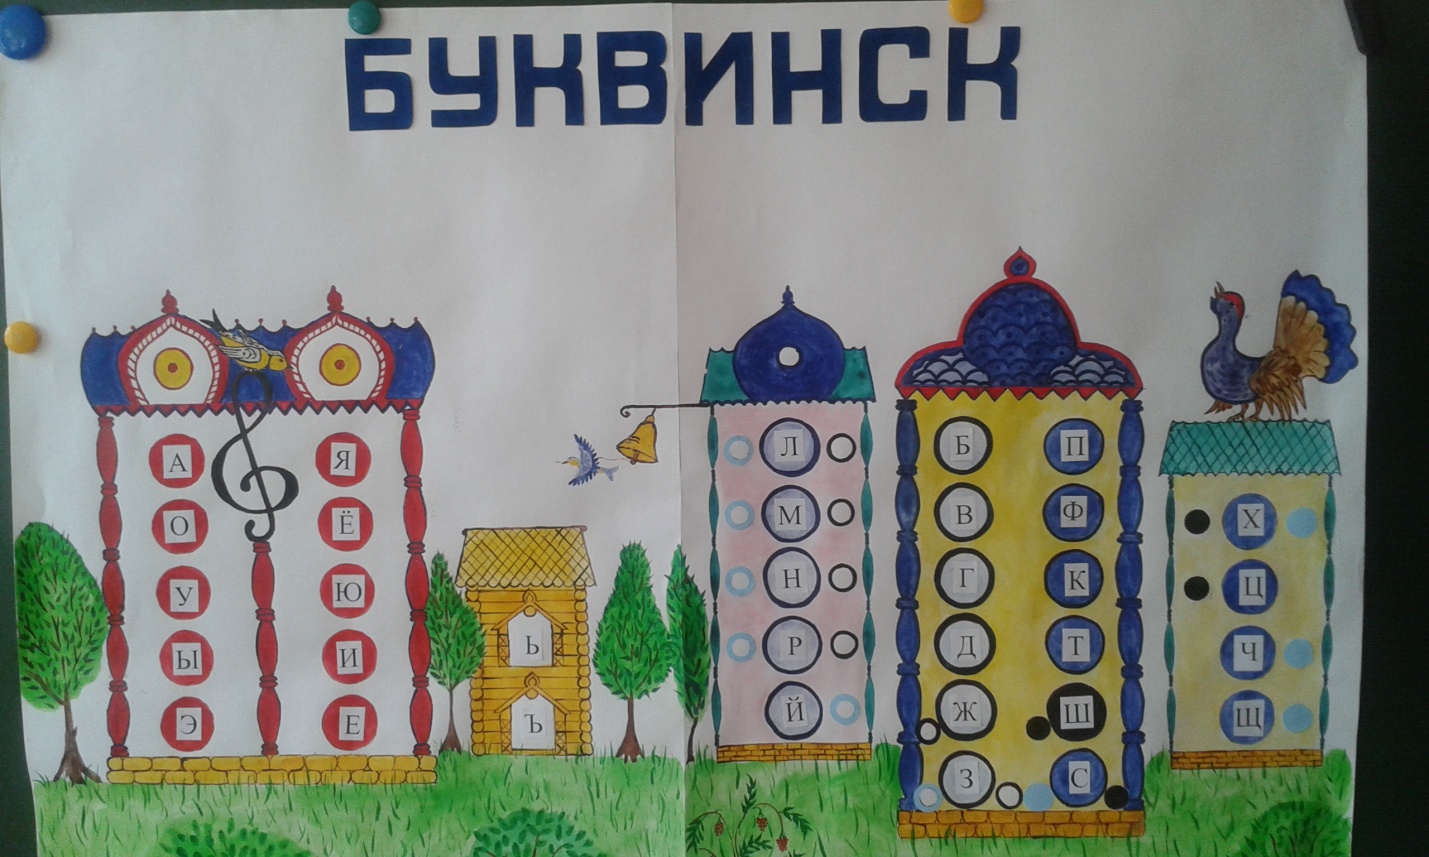 Таблица Буквинск для уроков обучения грамоте